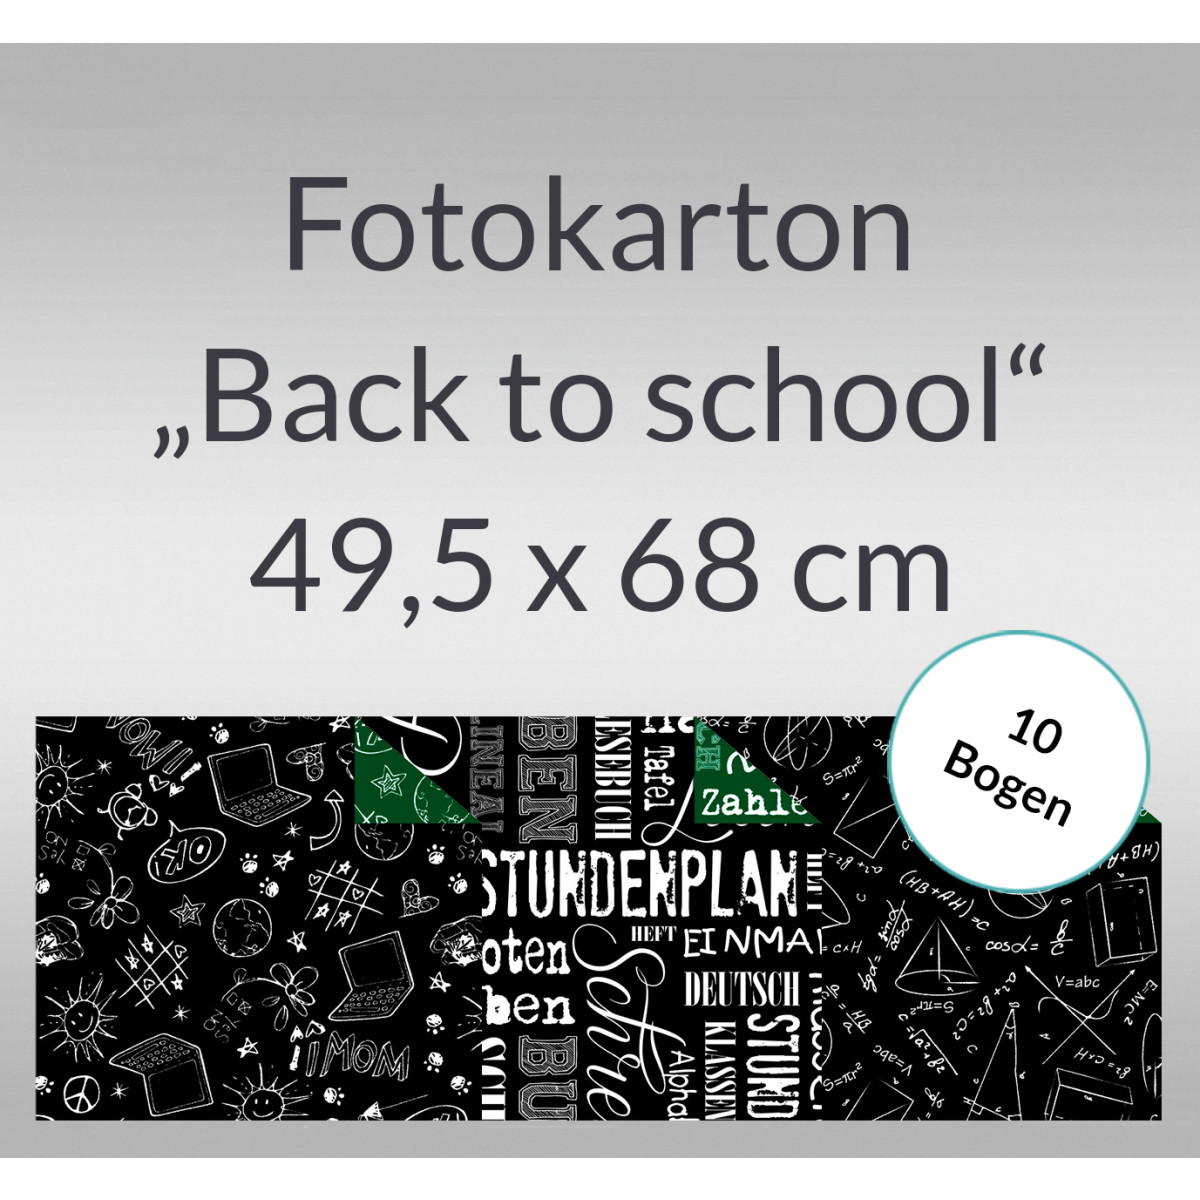 Fotokarton "Back to school" 49,5 x 68 cm - 10 Bogen